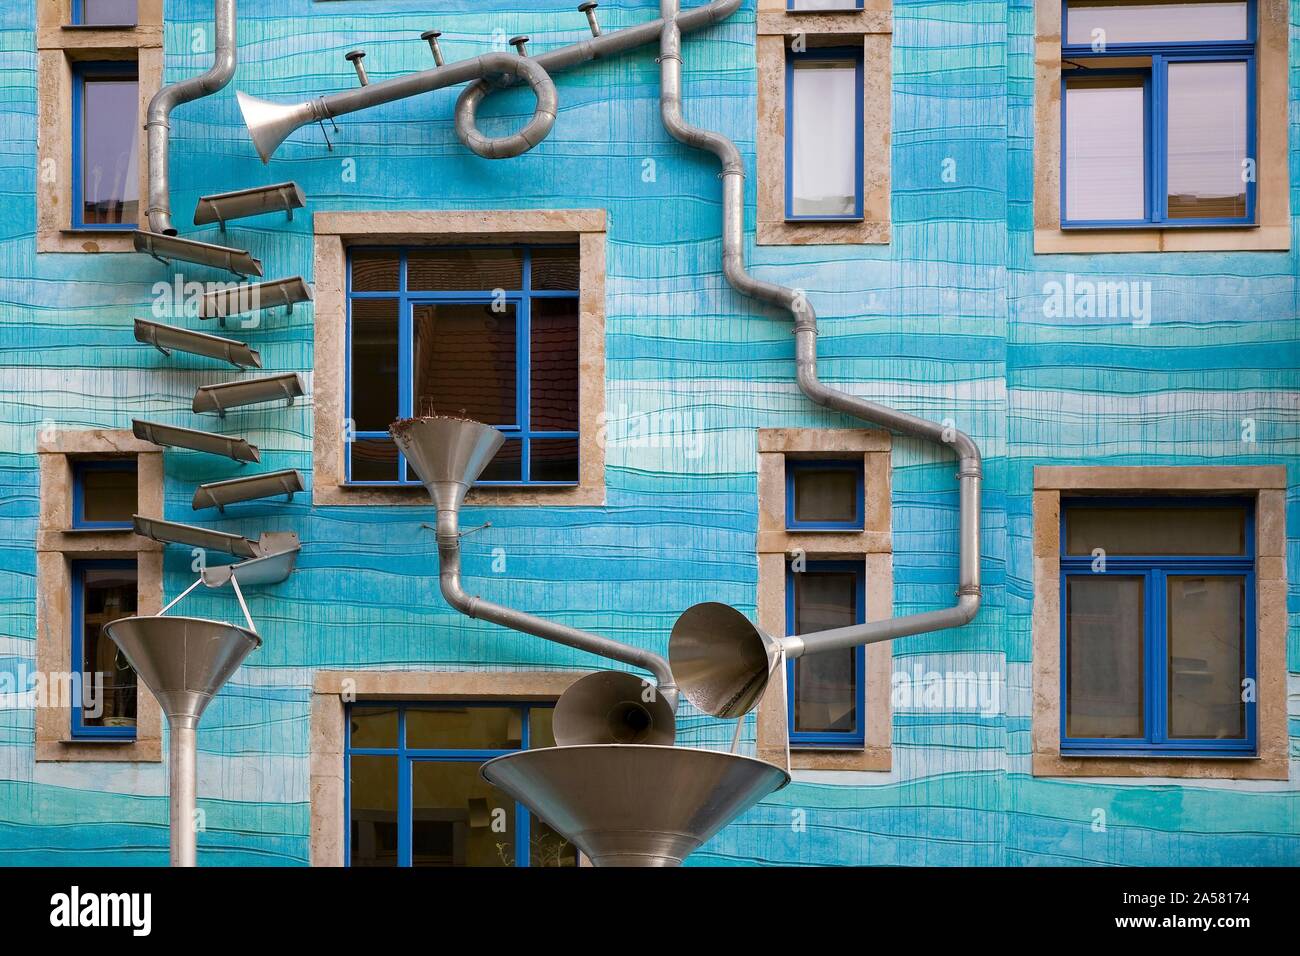 Kunsthof Dresden Regenwasser spielen, blau Hausfassade mit regenwasserleitungen, Künstler Annette Paul, Christoph Rossner und Andre Tempel, Antonstadt, Dresden Stockfoto